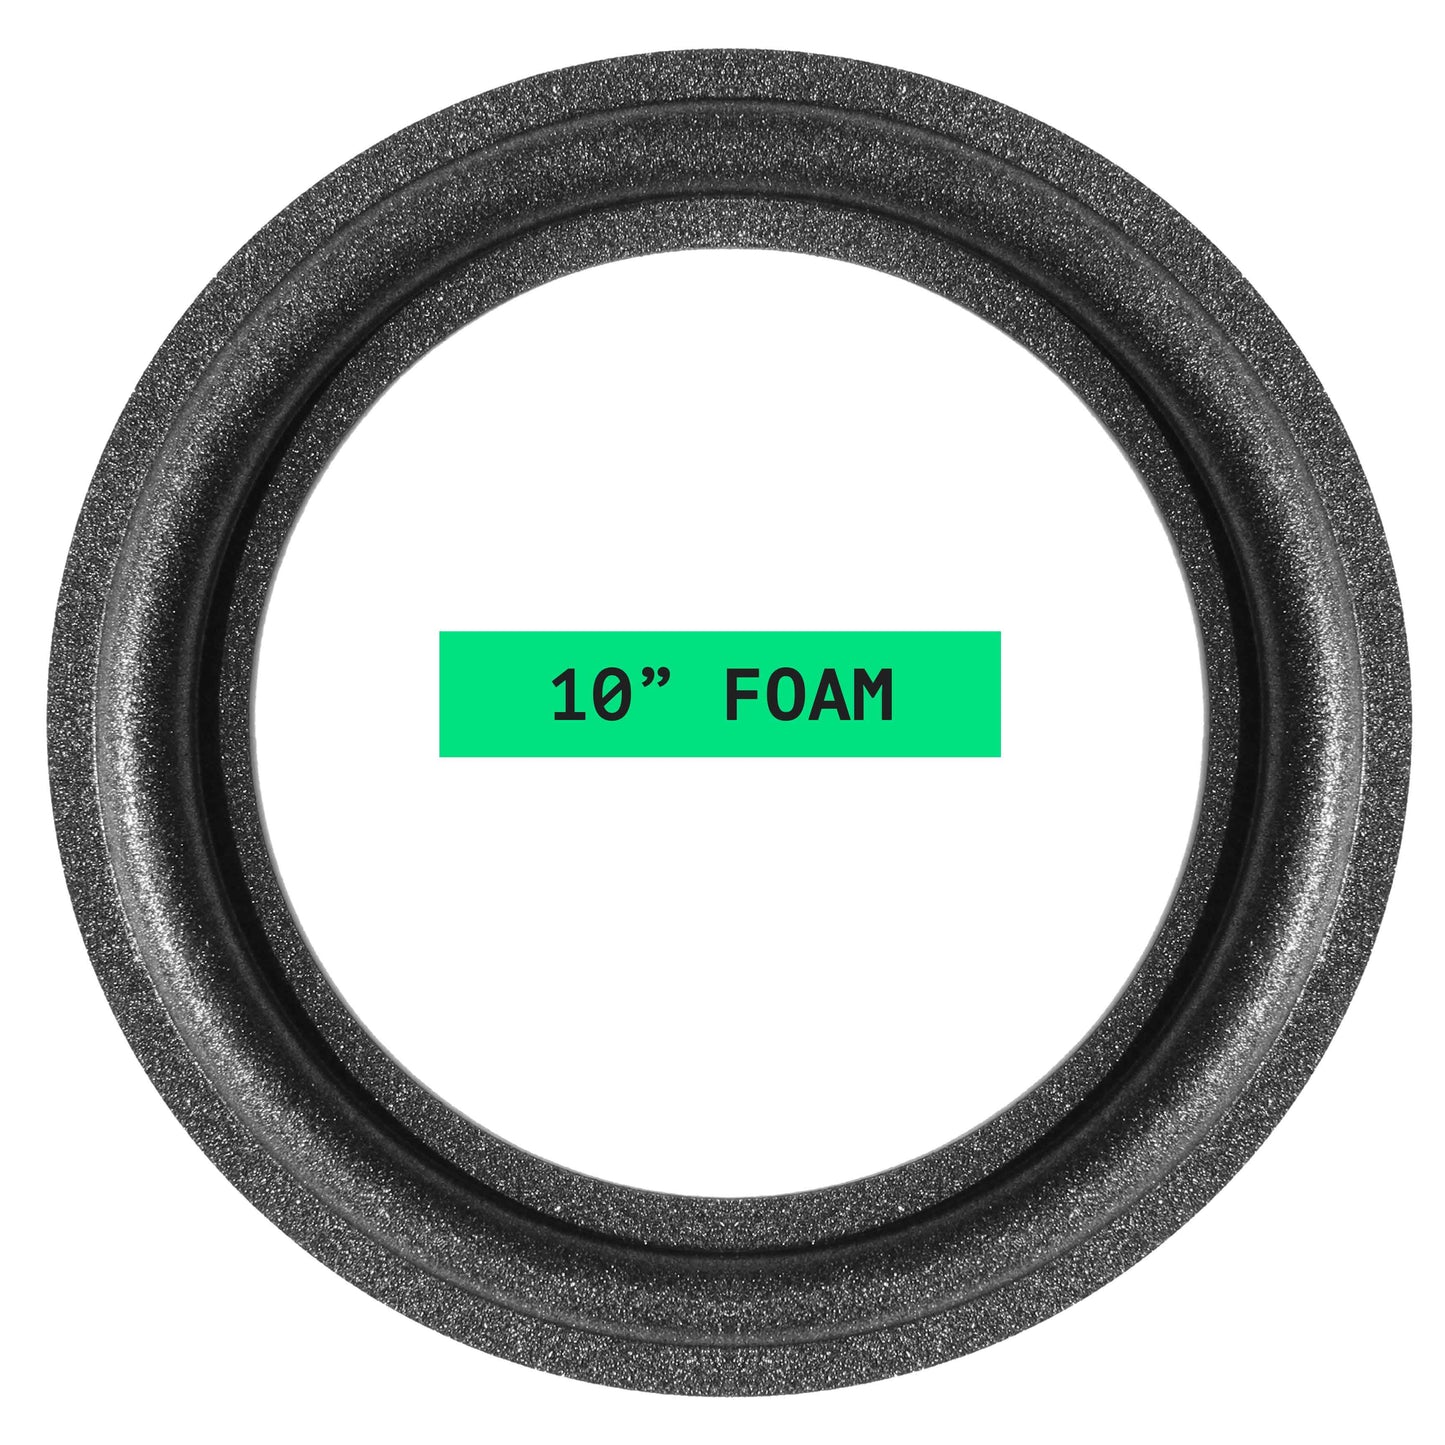 KLH 103, 317, 610, 10" Foam Repair Kit